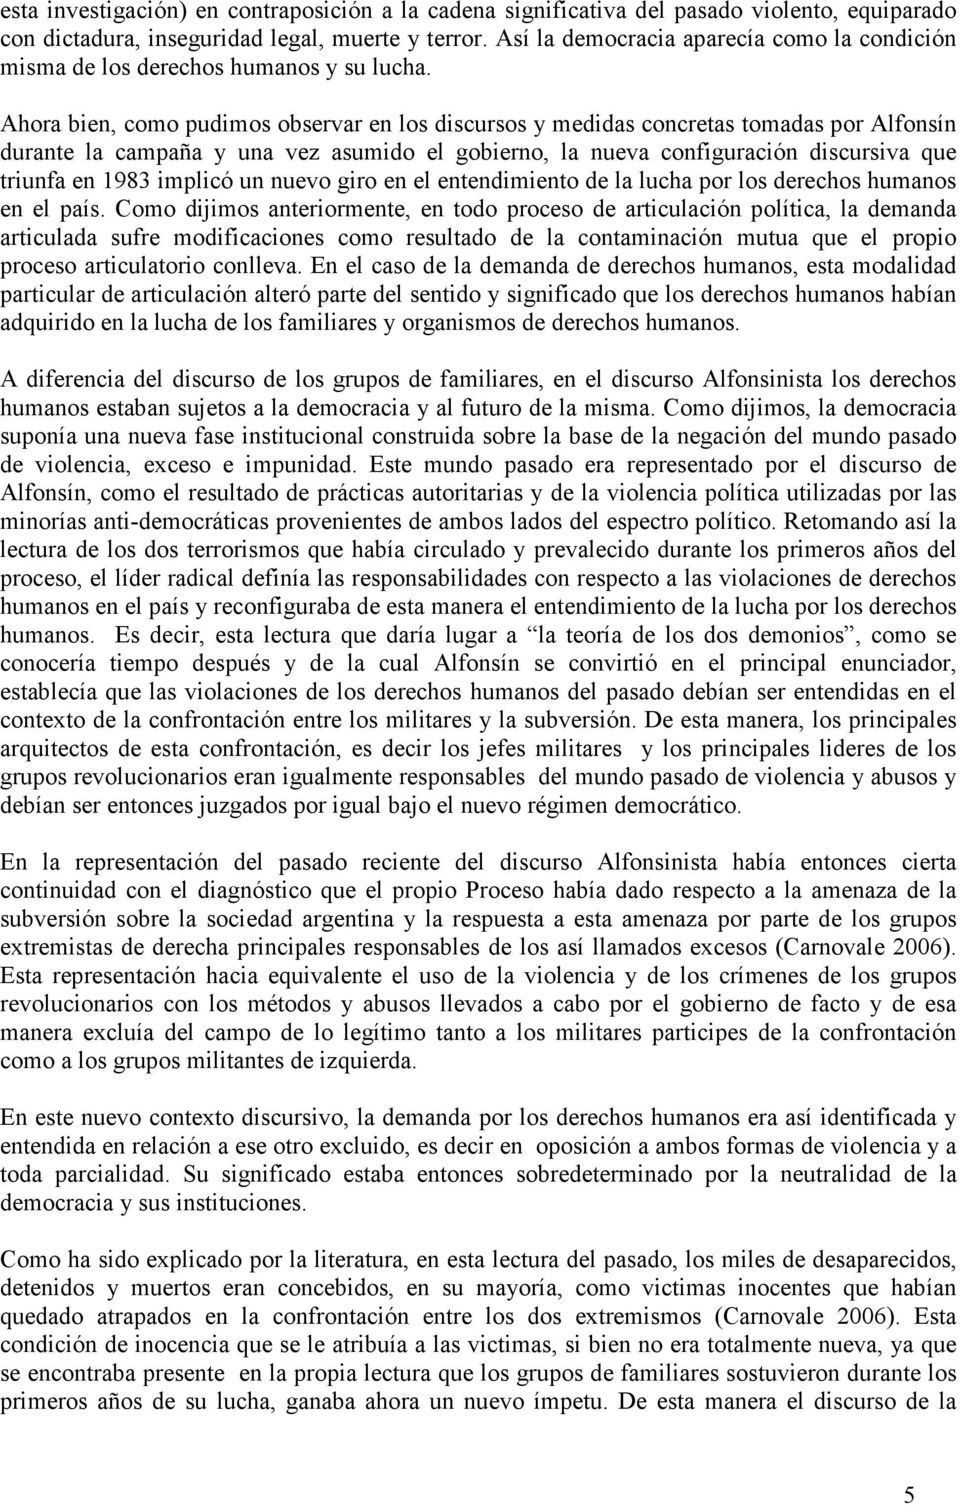 Ahora bien, como pudimos observar en los discursos y medidas concretas tomadas por Alfonsín durante la campaña y una vez asumido el gobierno, la nueva configuración discursiva que triunfa en 1983